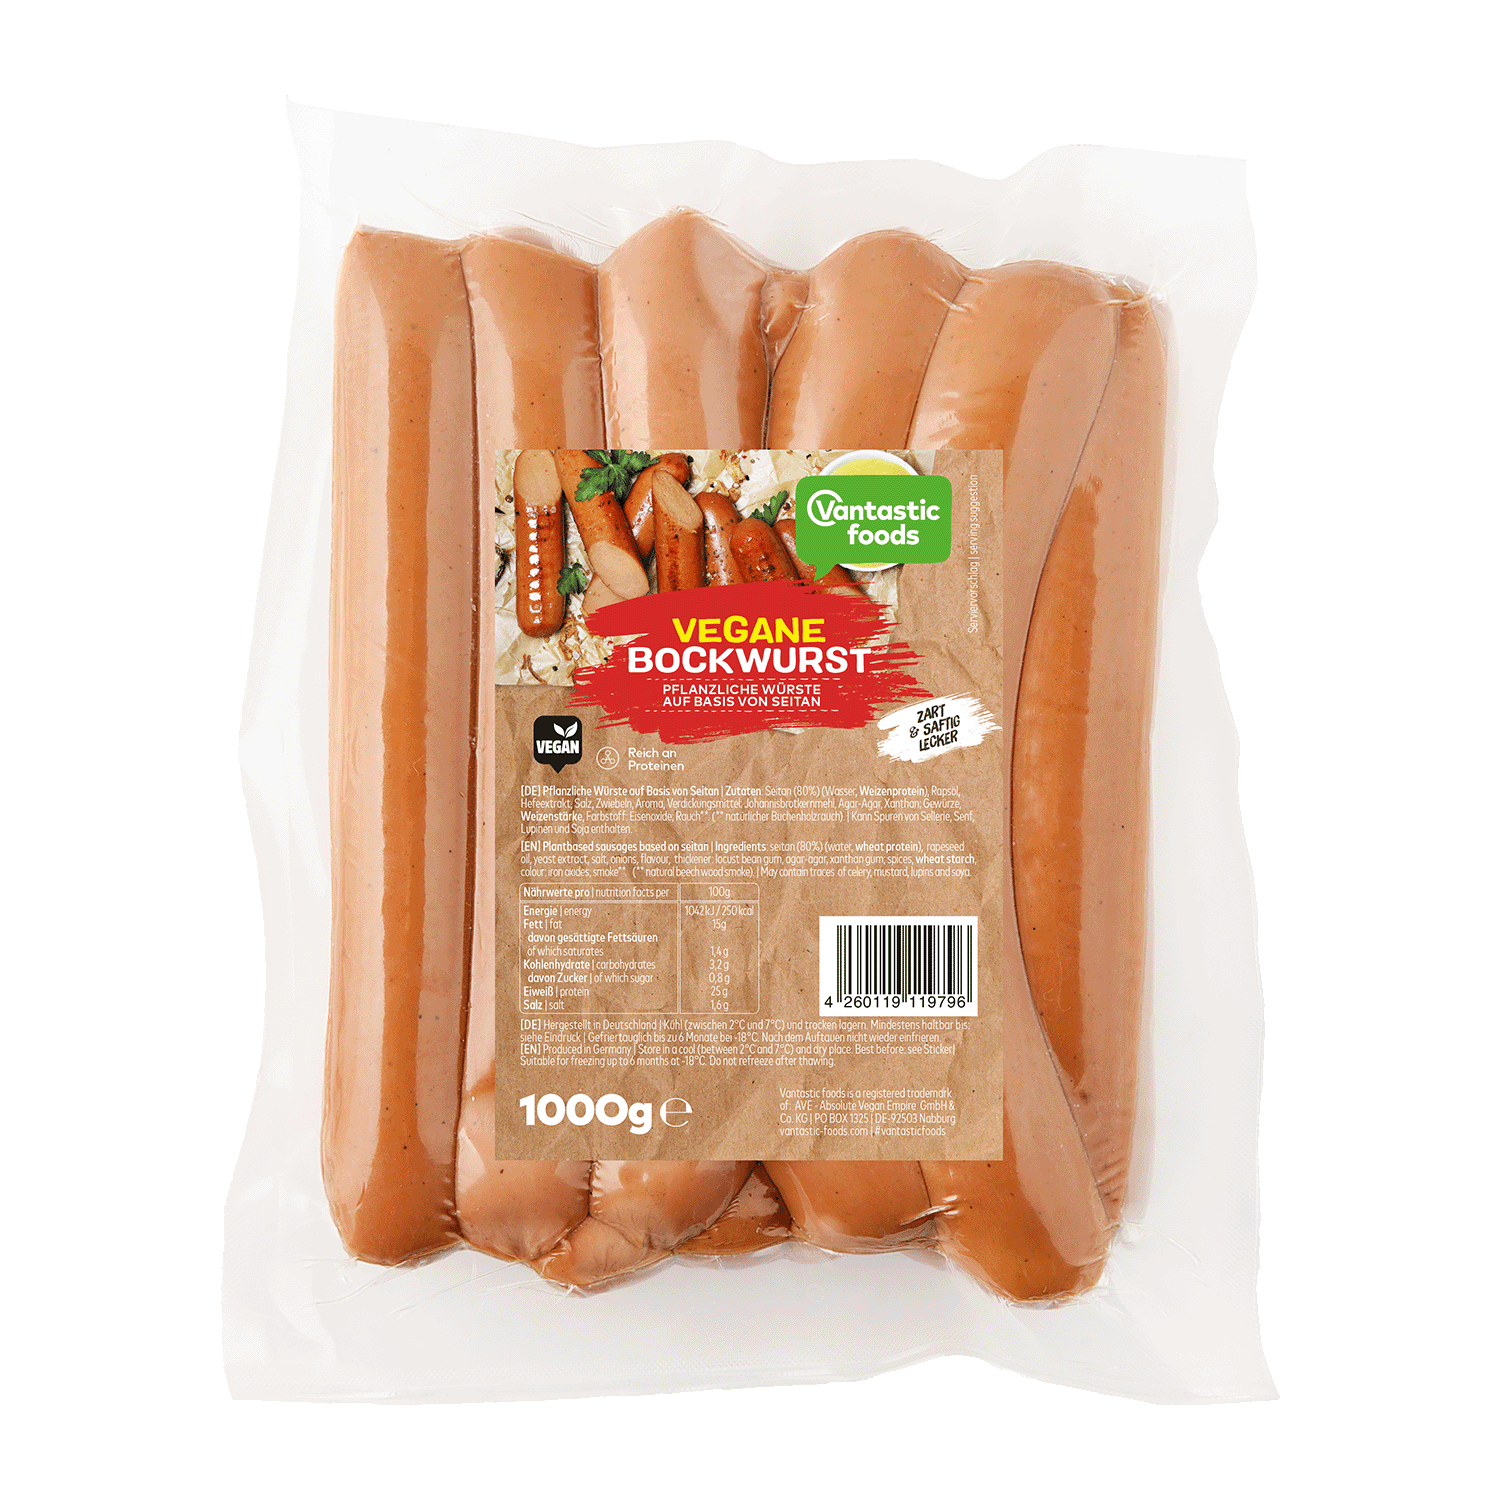 Vegane Bockwurst, Großpack, 1kg